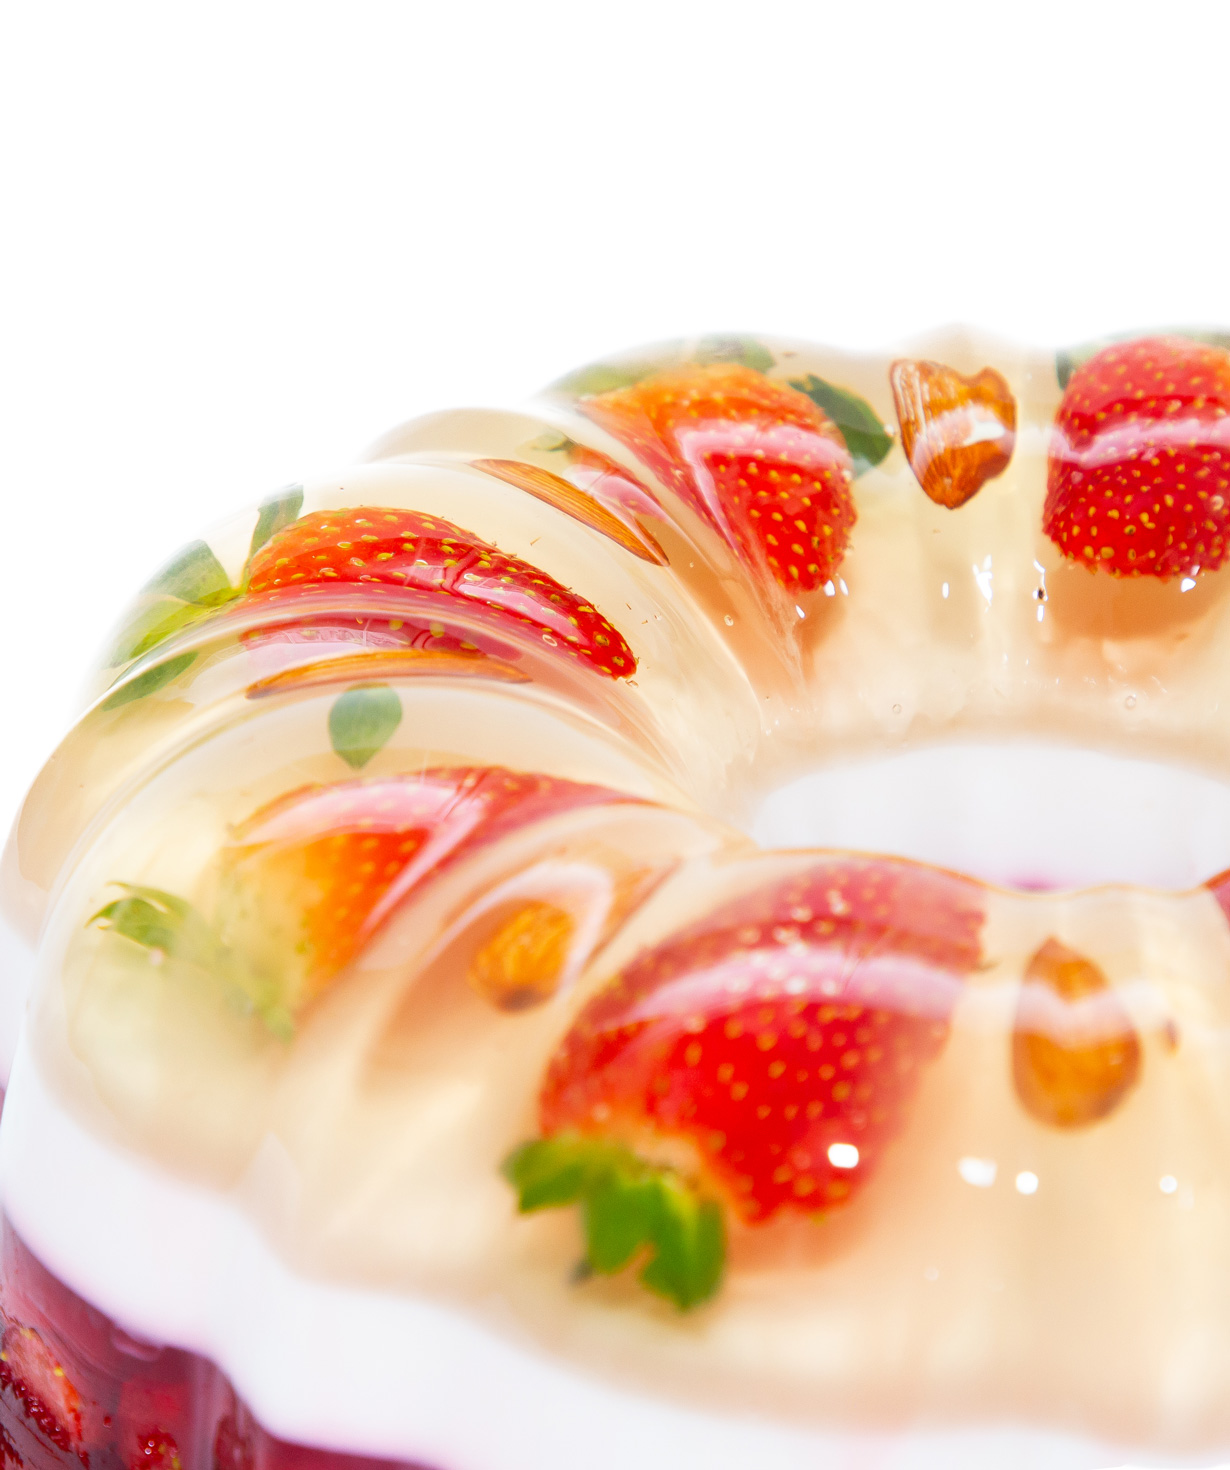 Cake-jelly «Parizyan's Jelly» №21